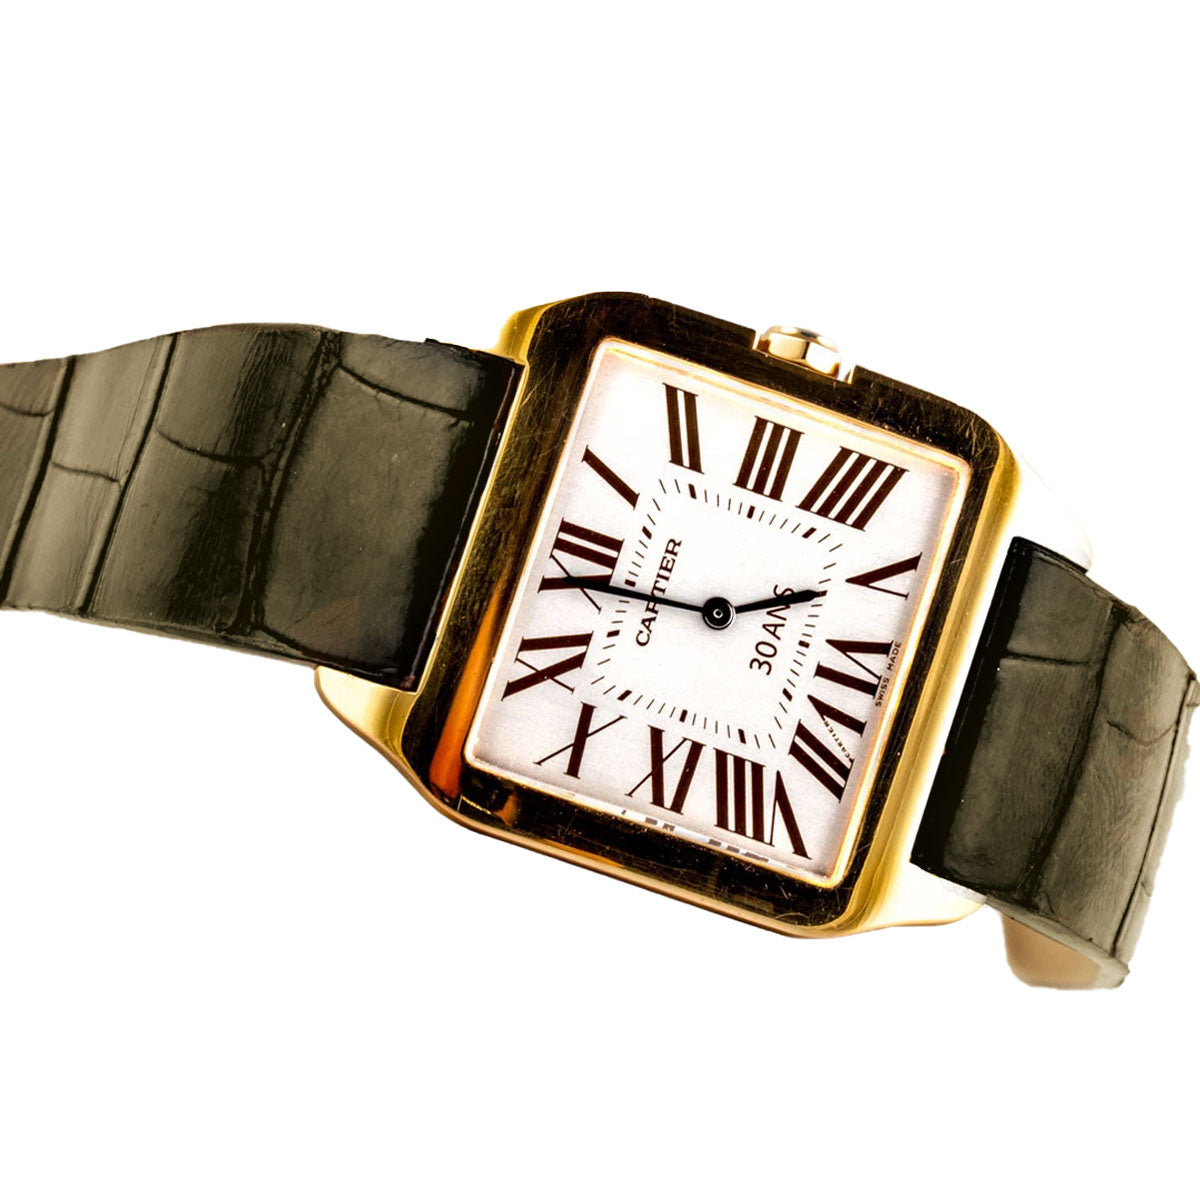 Cartier Santos Dumont - Bracelet montre cuir - Alligator (noir, bleu, marron, gris...) - watch band leather strap - ABP Concept -